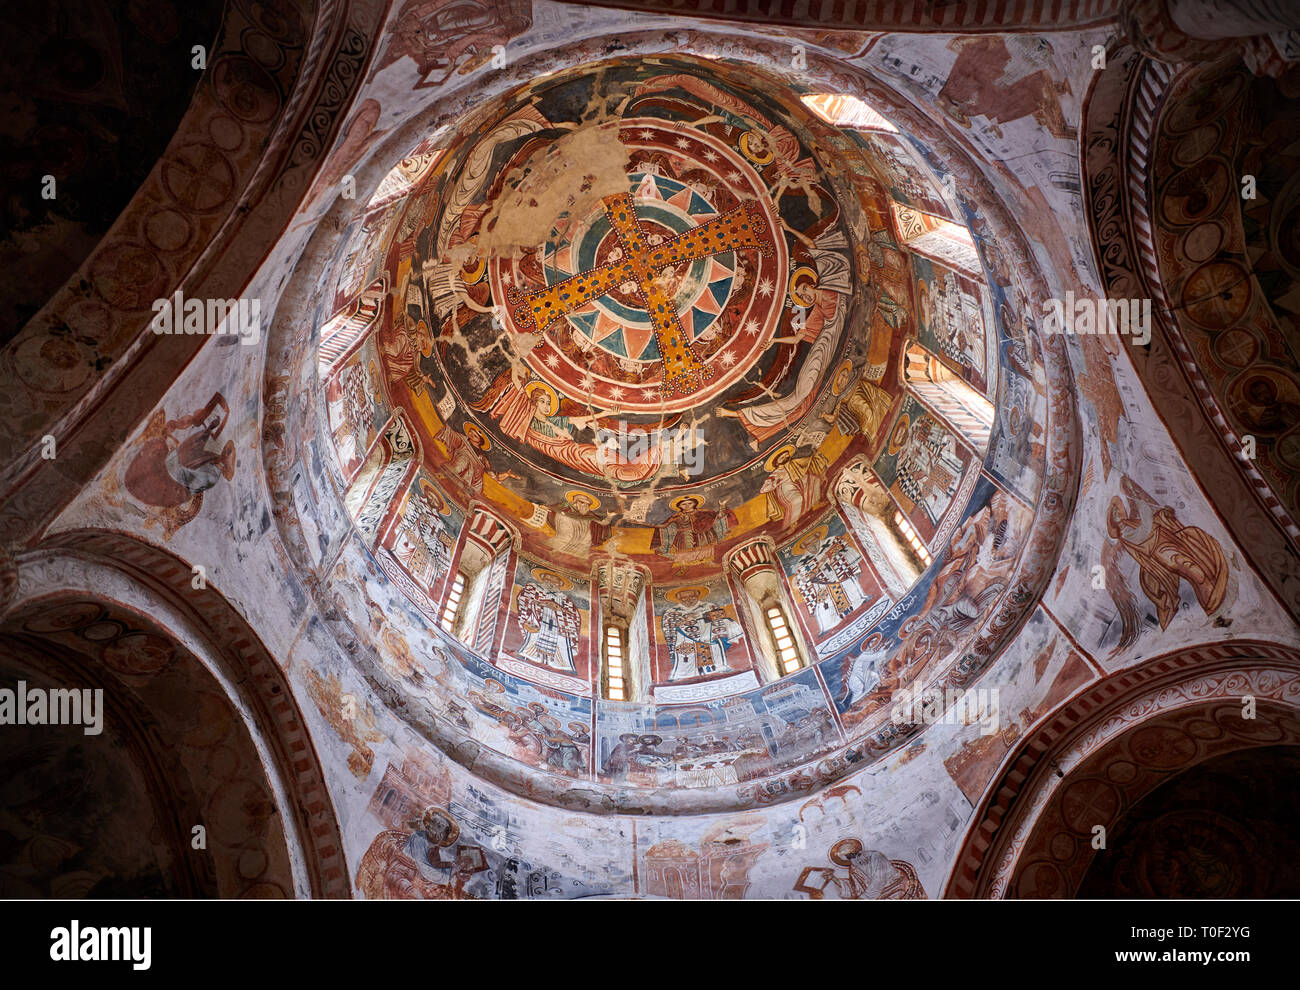 Photos et images de Nikortsminda ( Nicortsminda ) St Nicholas cathédrale orthodoxe de Géorgie intérieur riche fresques de la coupole dôme, 16ème siècle, le Ni Banque D'Images